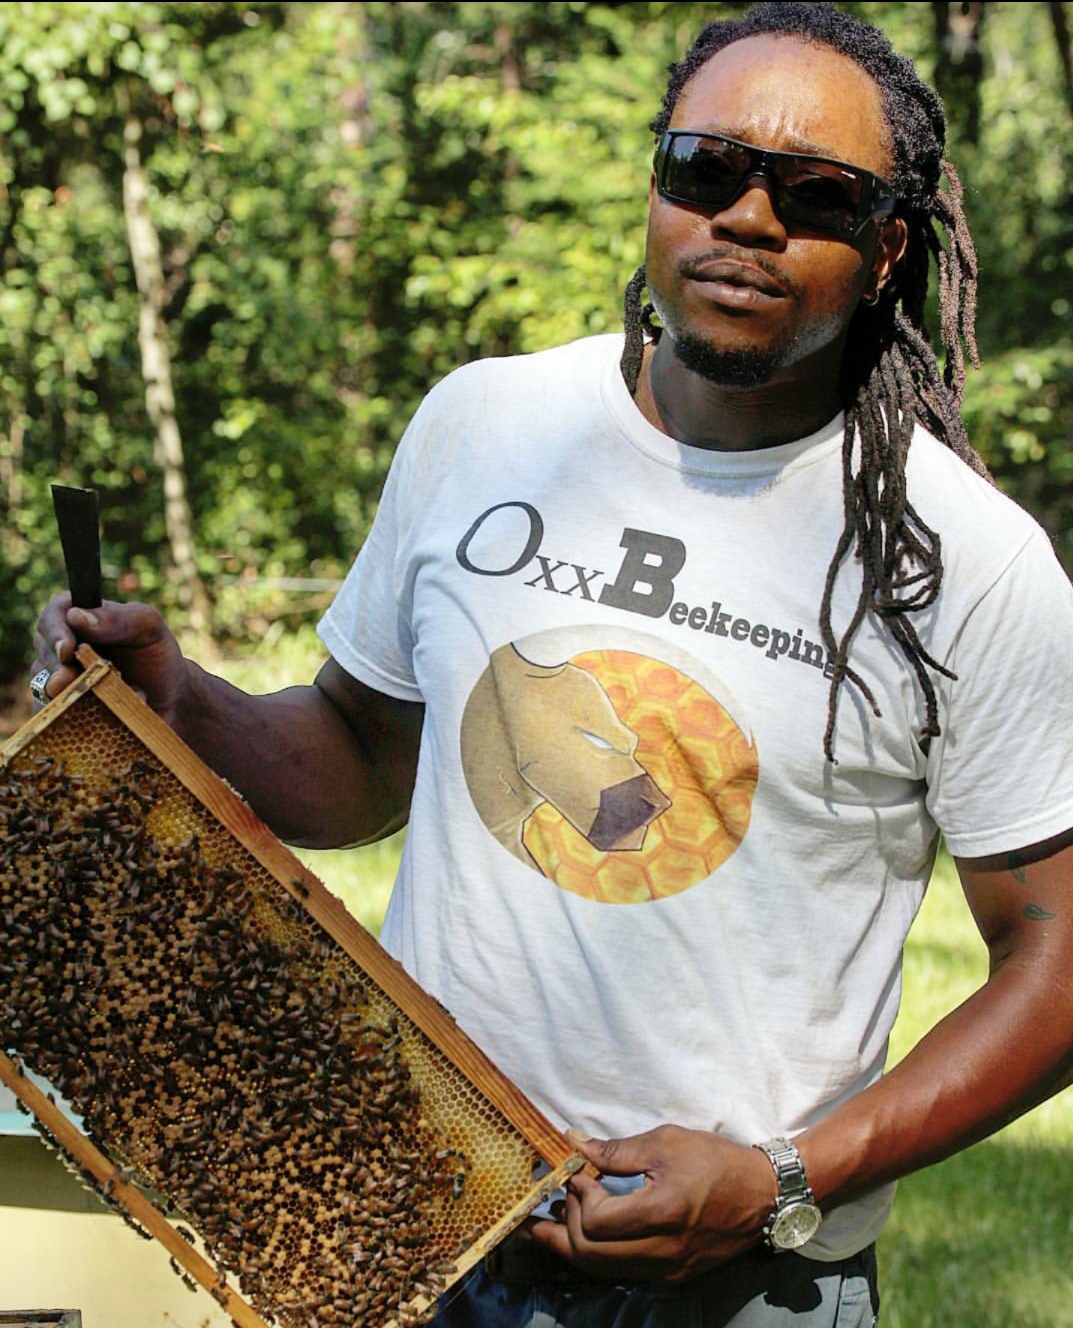 Oxx Beekeeping LLC